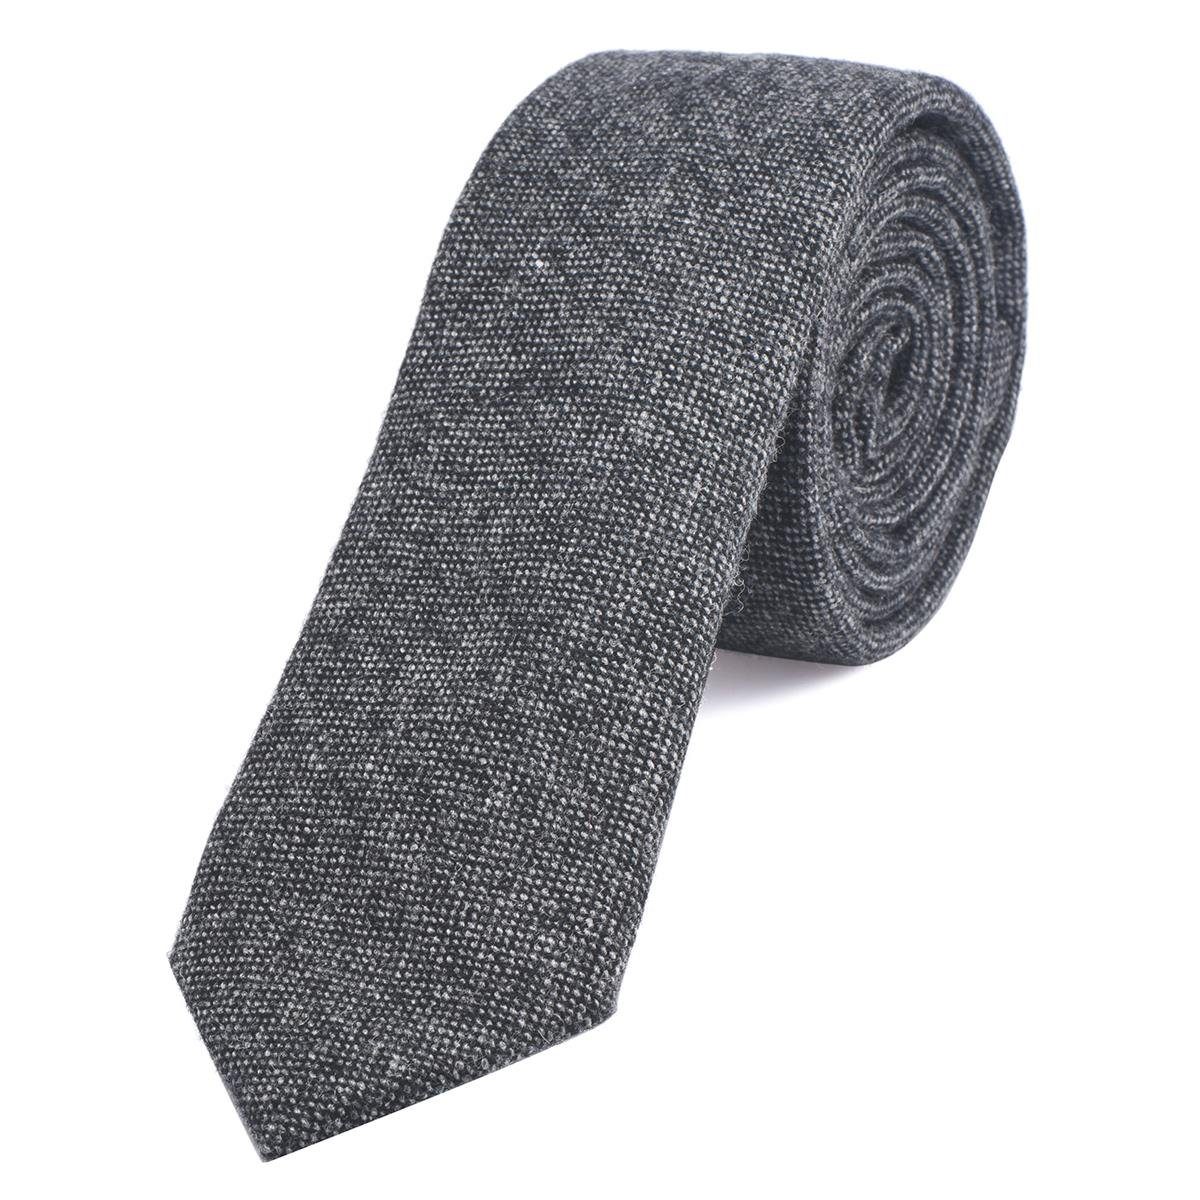 DonDon Krawatte Herren Krawatte 6 cm einfarbig kariert und gepunkt (Packung, 1-St., 1x Krawatte) Baumwolle, verschiedene Muster, für Büro oder festliche Veranstaltungen schwarz-grau